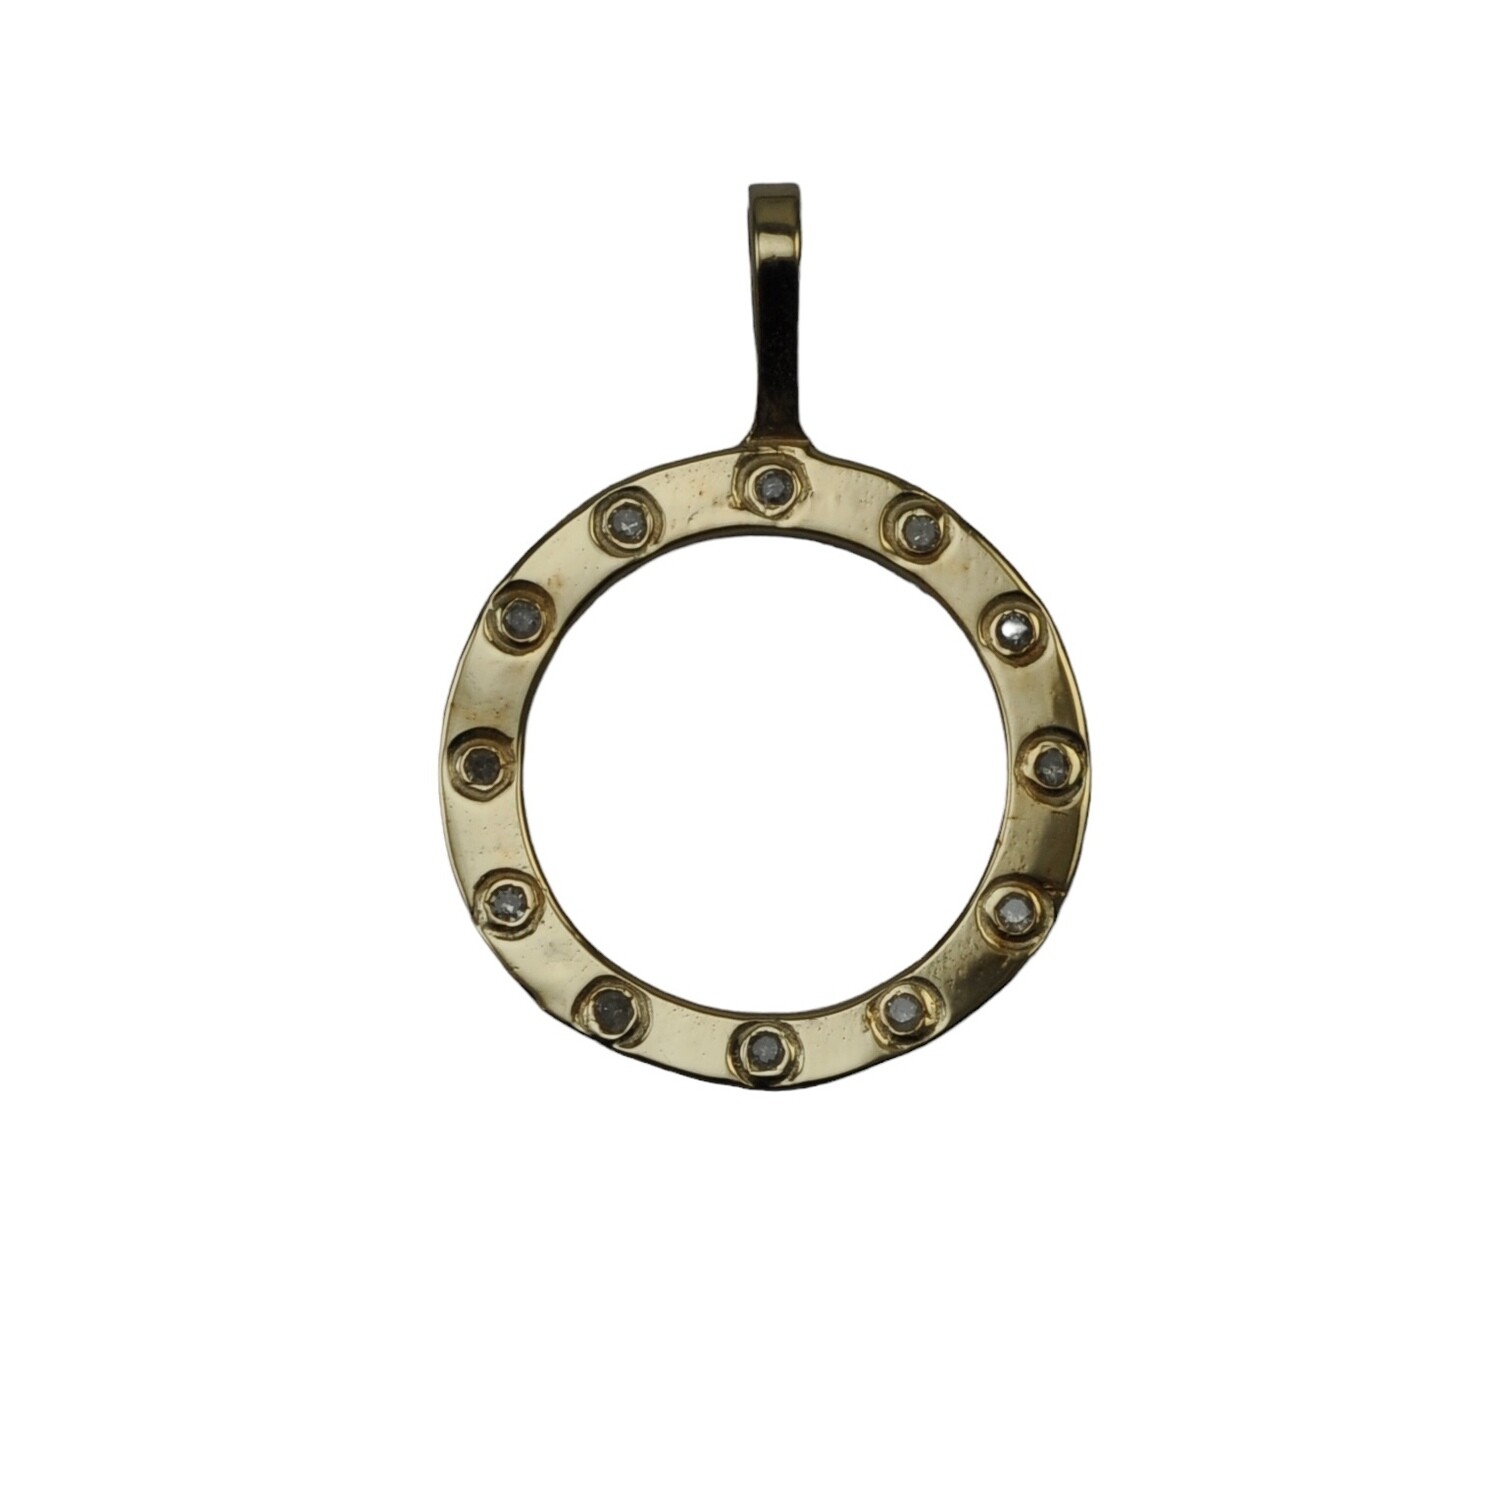 Diamond set gold circular pendant